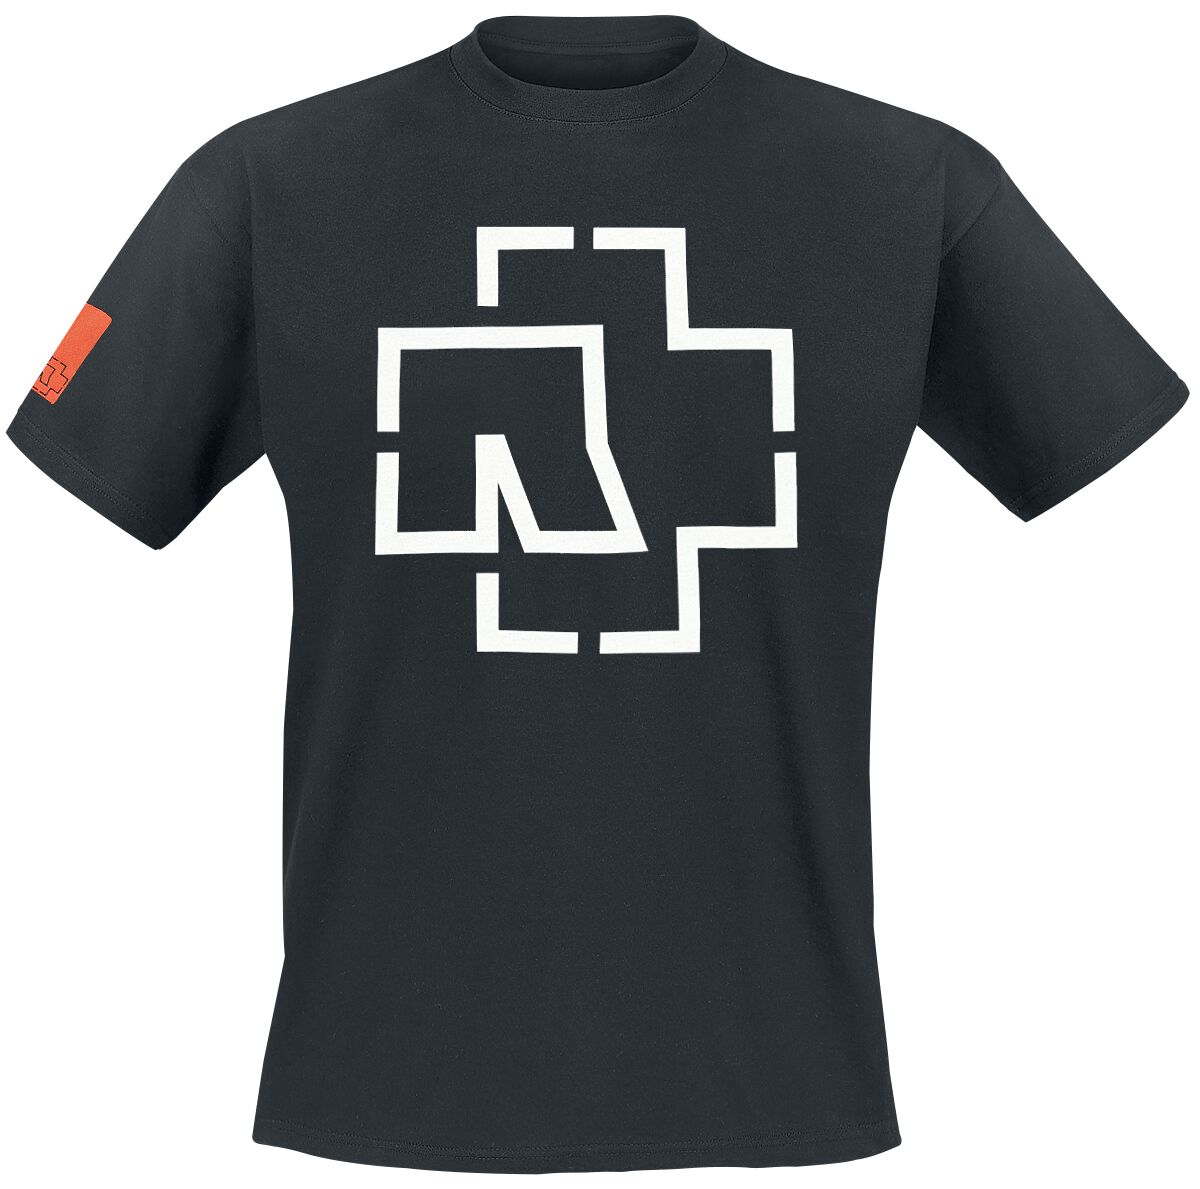 Rammstein T-Shirt - Logo - S bis 3XL - für Männer - Größe L - schwarz  - Lizenziertes Merchandise!